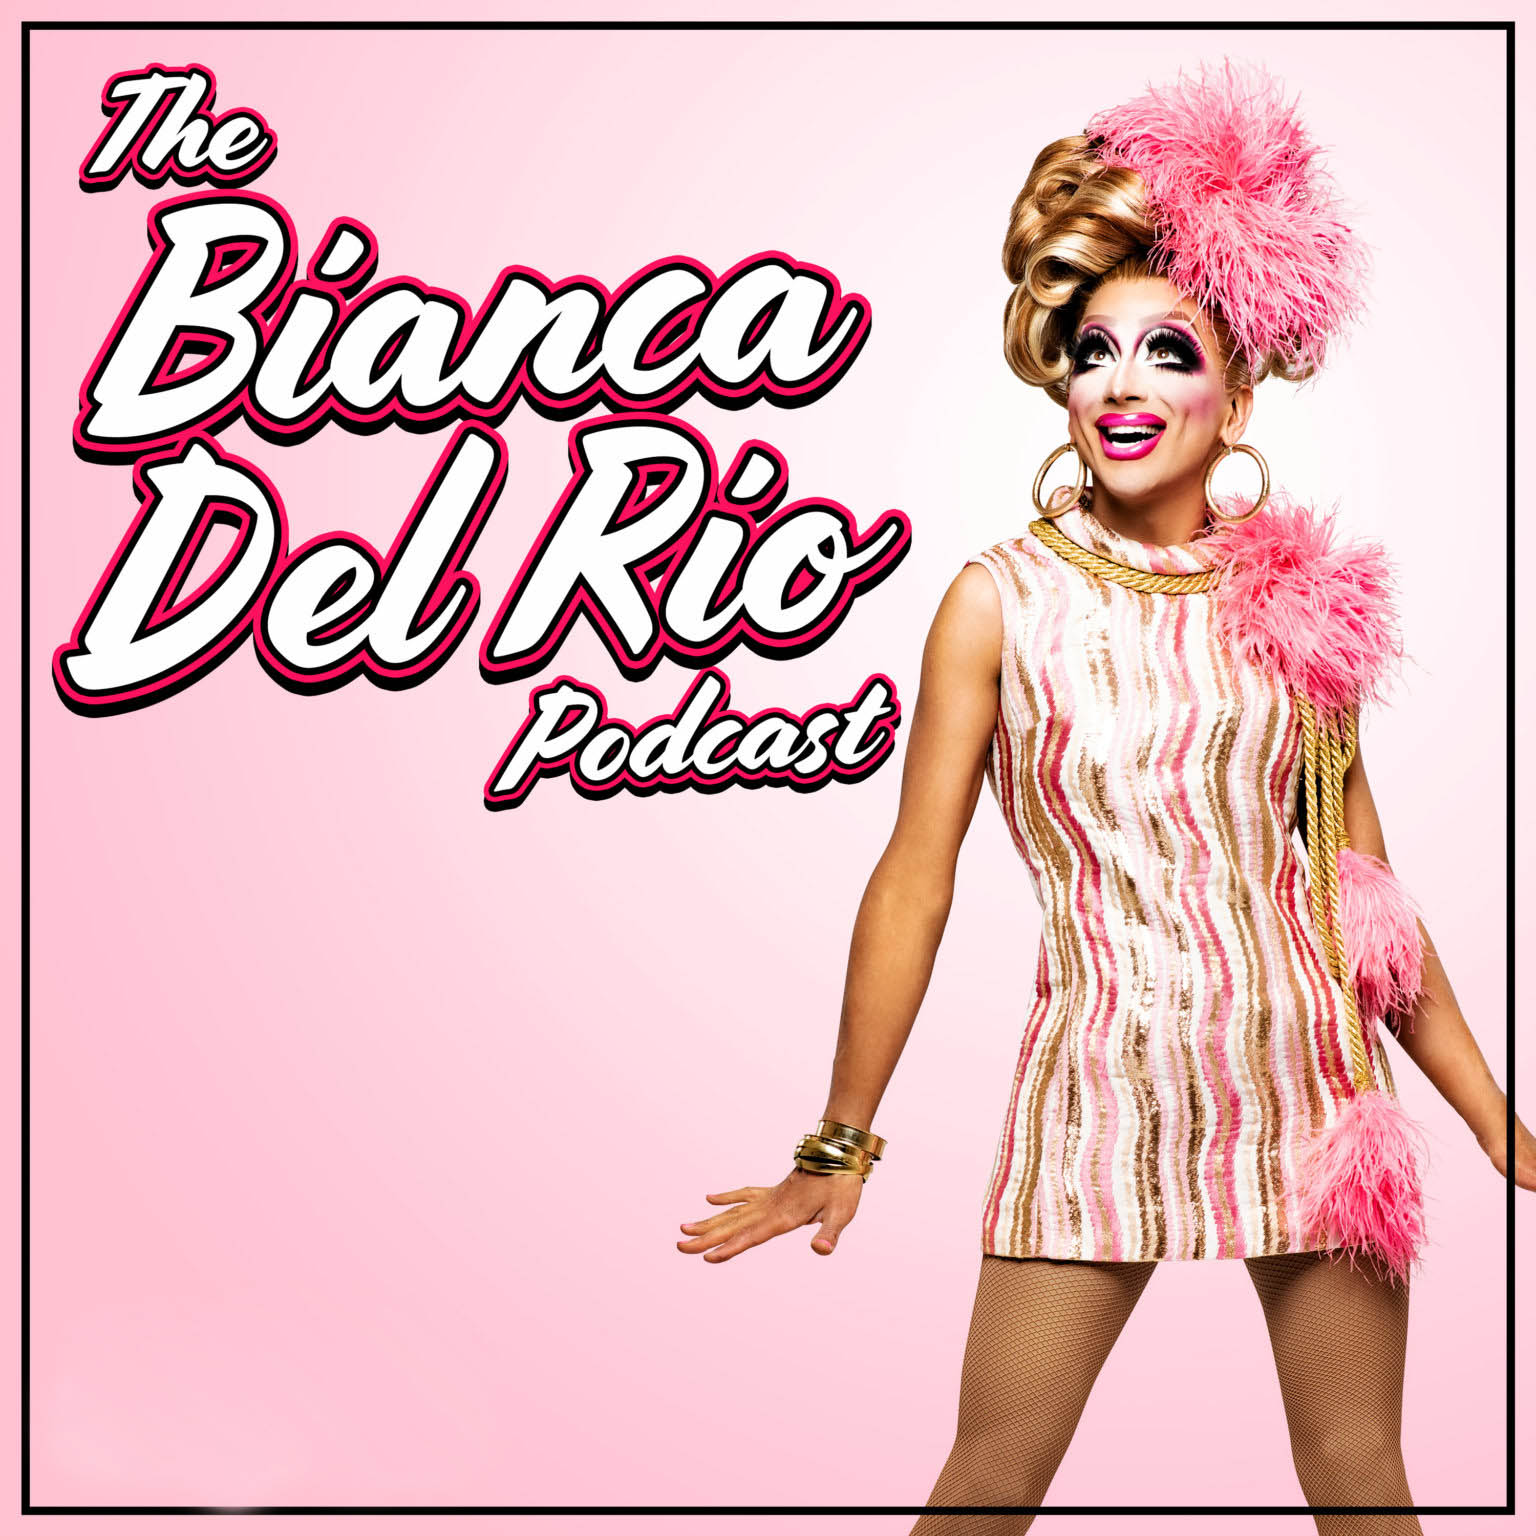 The Bianca Del Rio Podcast Cover - Square